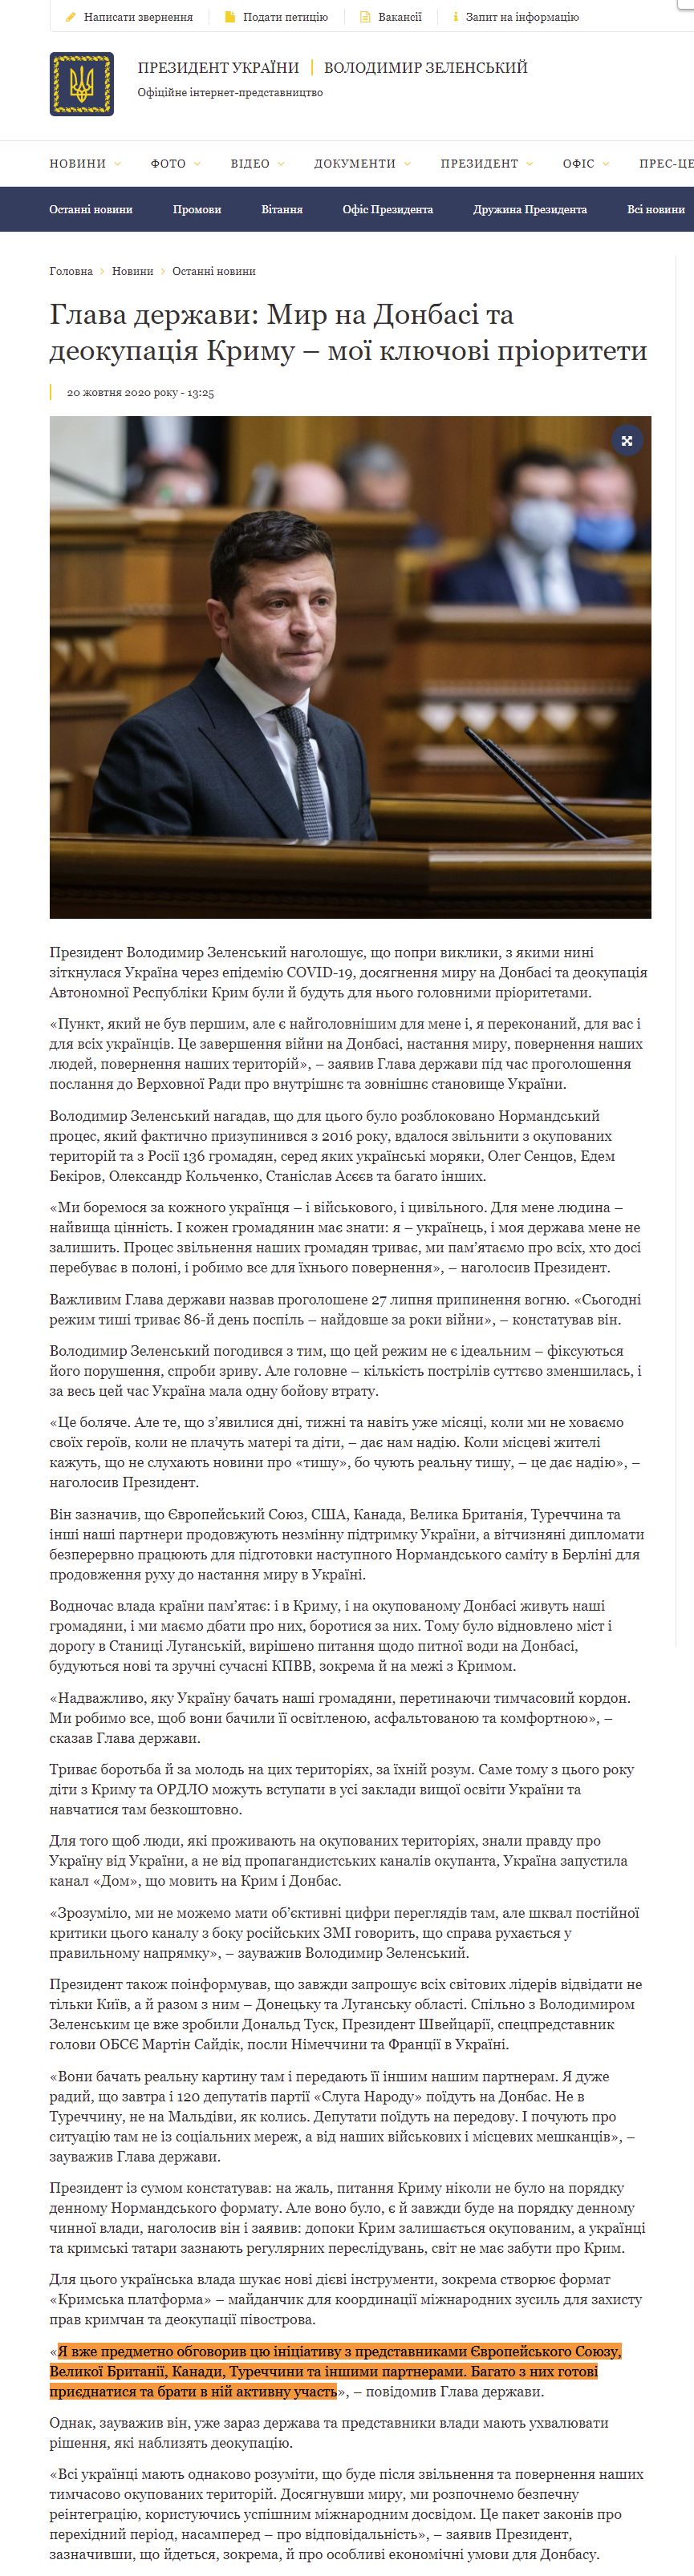 https://www.president.gov.ua/news/glava-derzhavi-mir-na-donbasi-ta-deokupaciya-krimu-moyi-klyu-64729